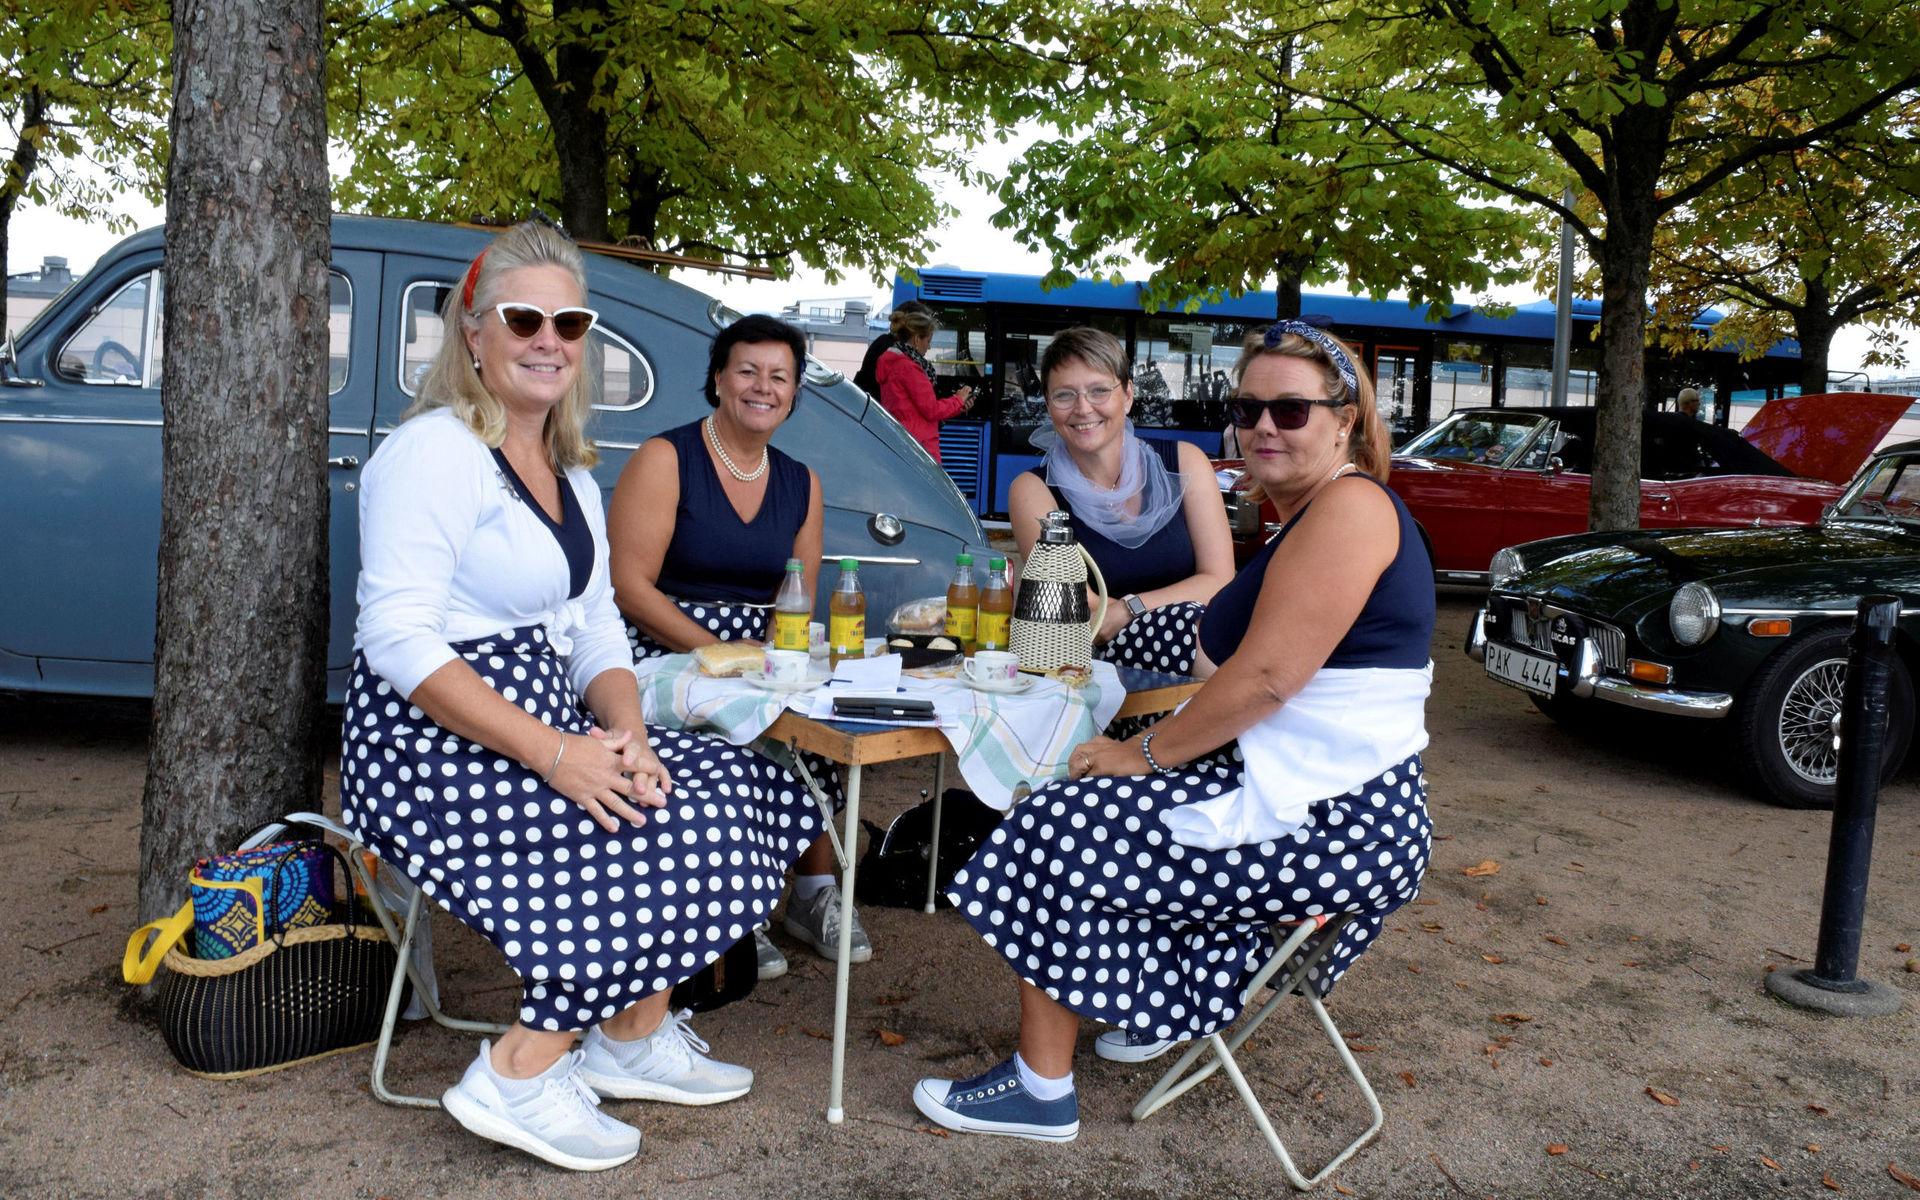 Ann Lundeflo, Lena Bosenius, Jeanette Mellqvist och Kristina Gamnis njöt av sin picknick